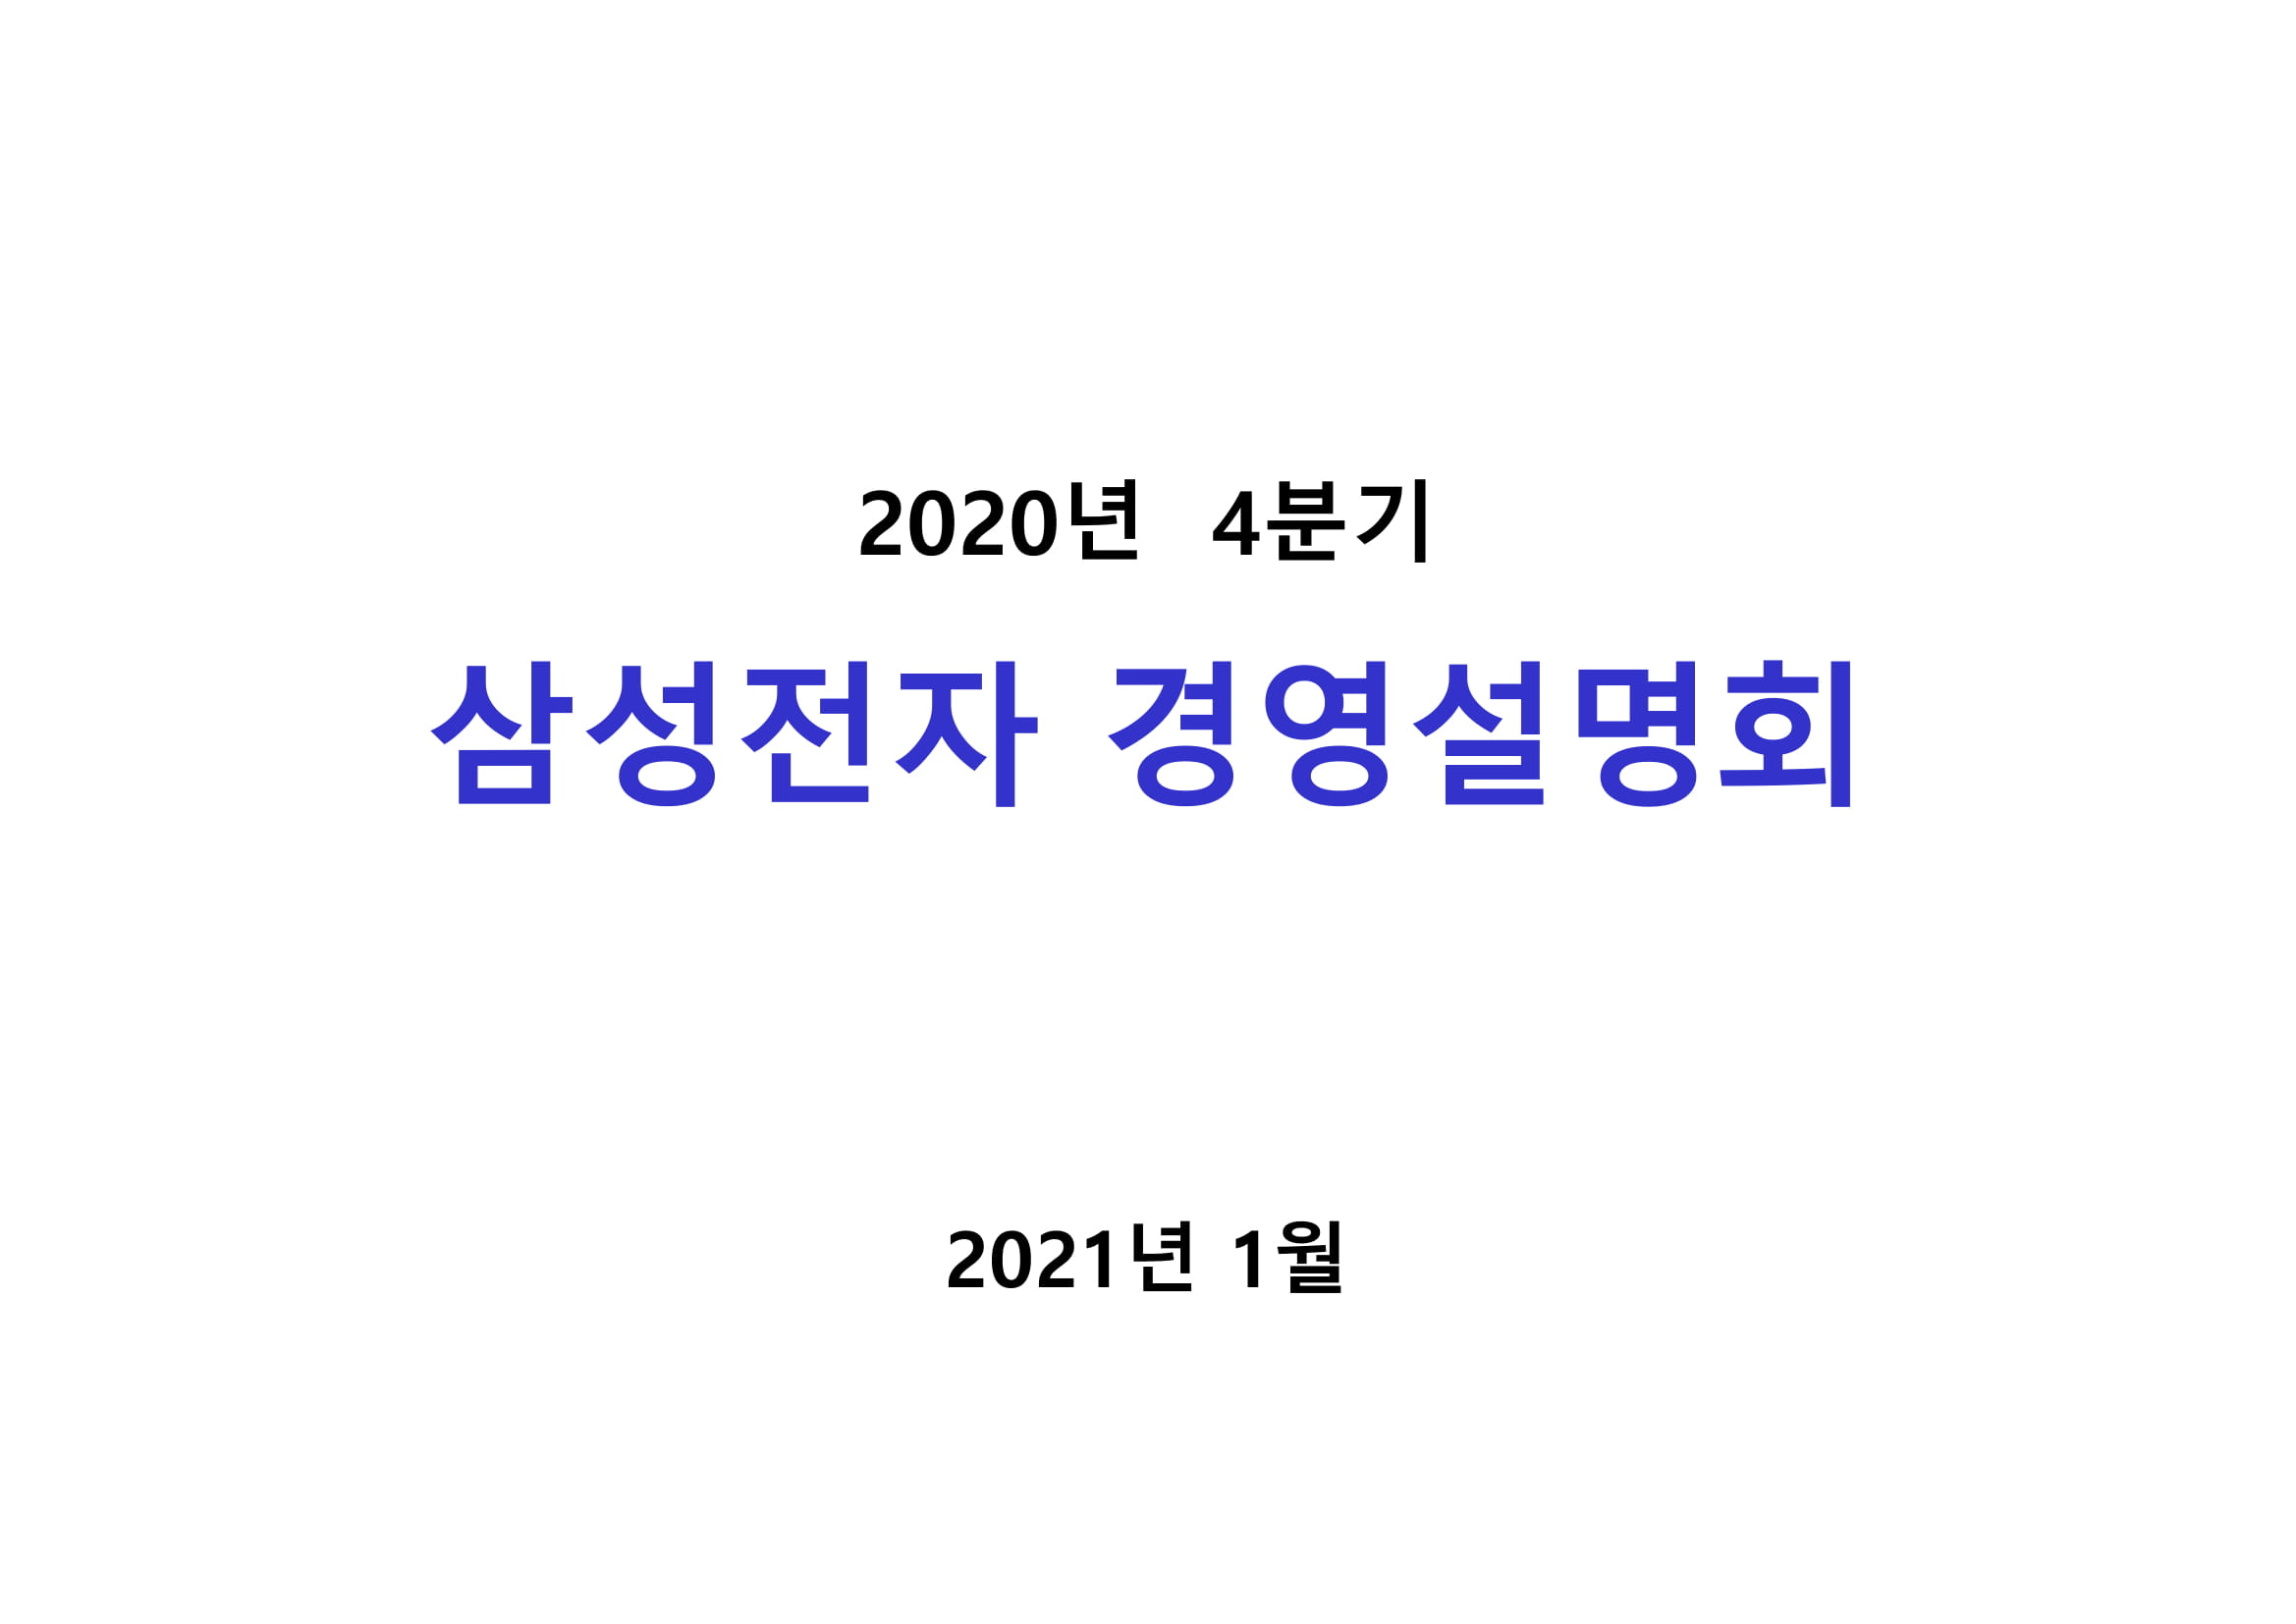 2020_4Q_conference_kor-1.jpg